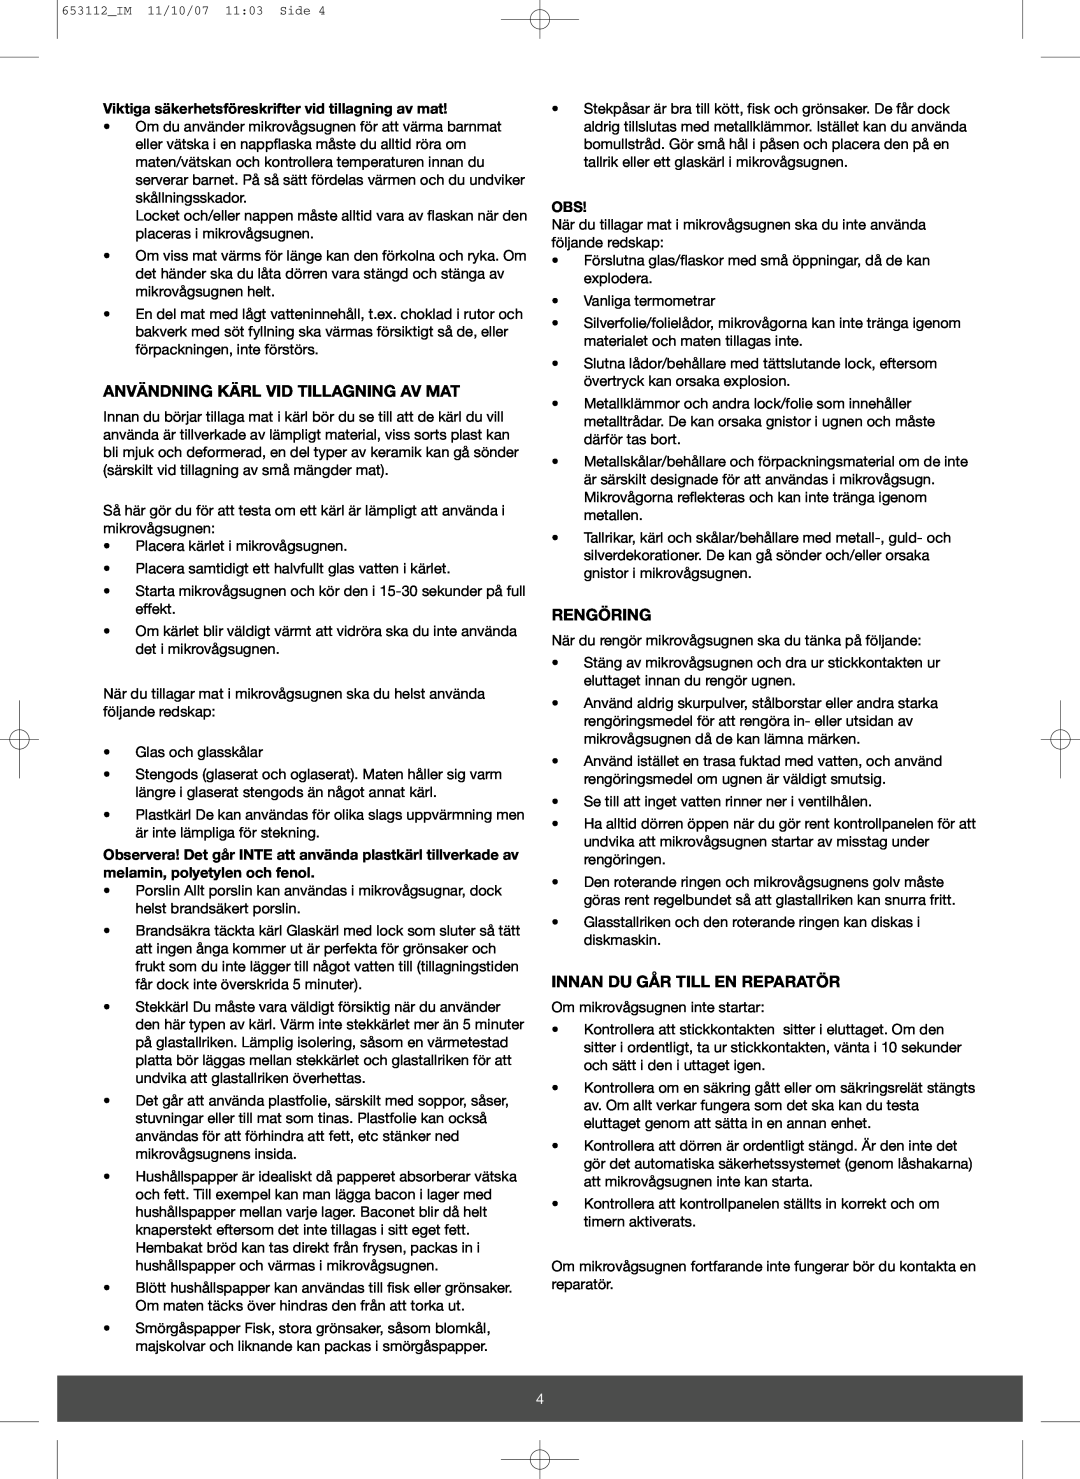 Melissa 653-115 manual Användning Kärl Vid Tillagning Av Mat, Rengöring, Innan Du Går Till En Reparatör 